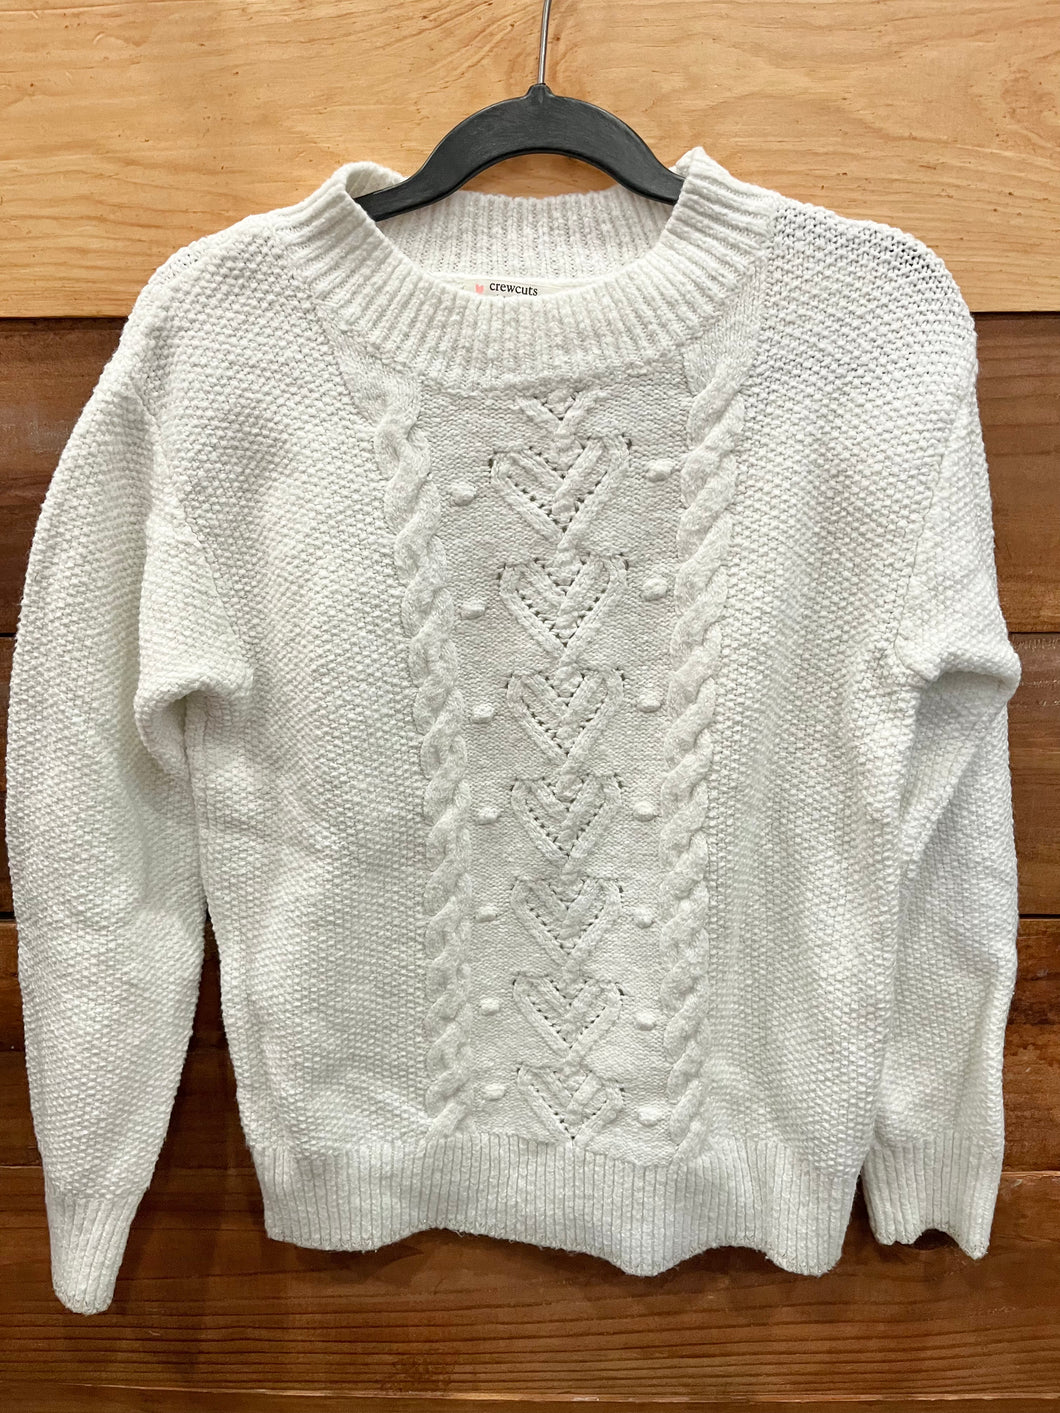 Crewcuts White Sweater Size 6-7